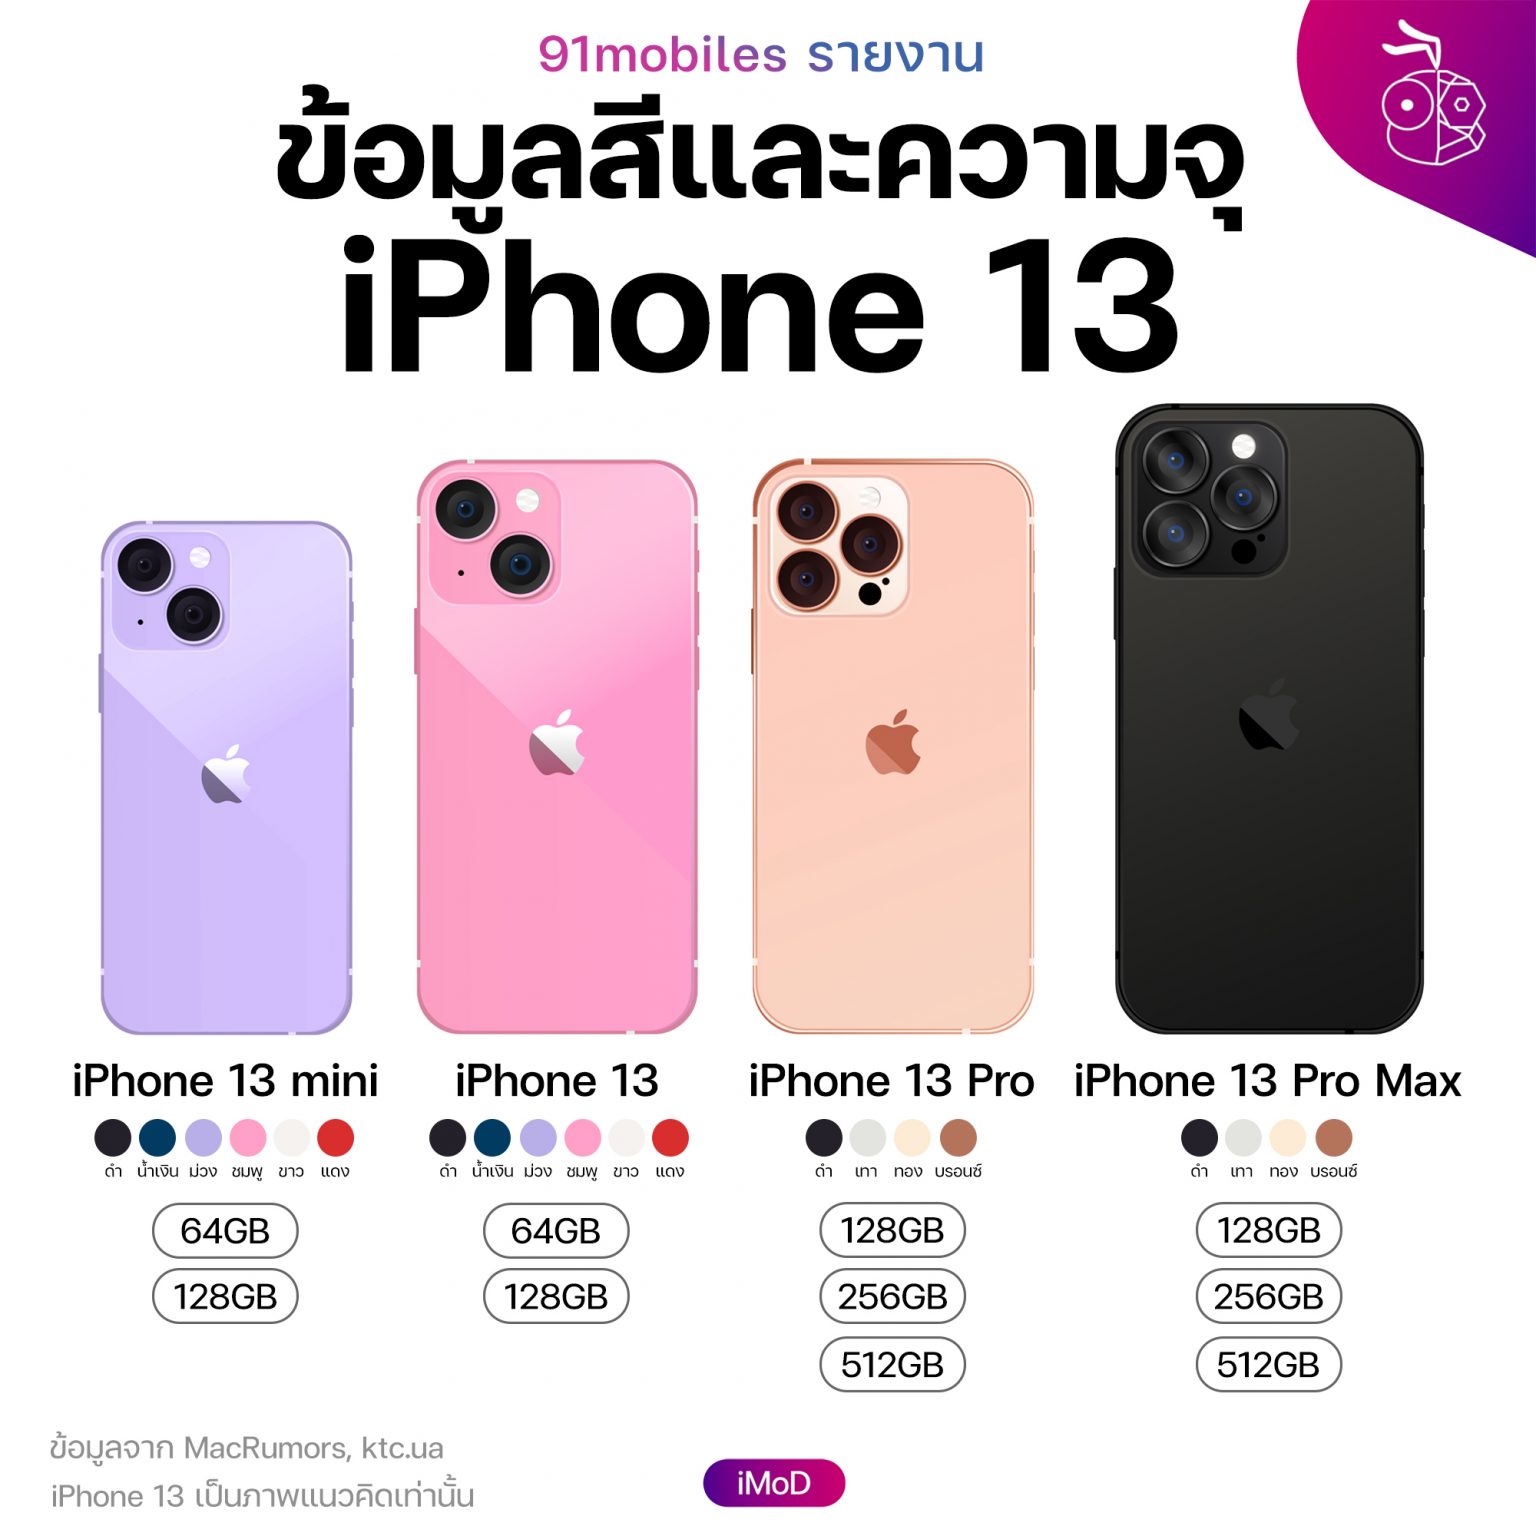 (ไม่ยืนยัน) เผยข้อมูลความจุและสีใหม่ของ iPhone 13, iPhone 13 Pro